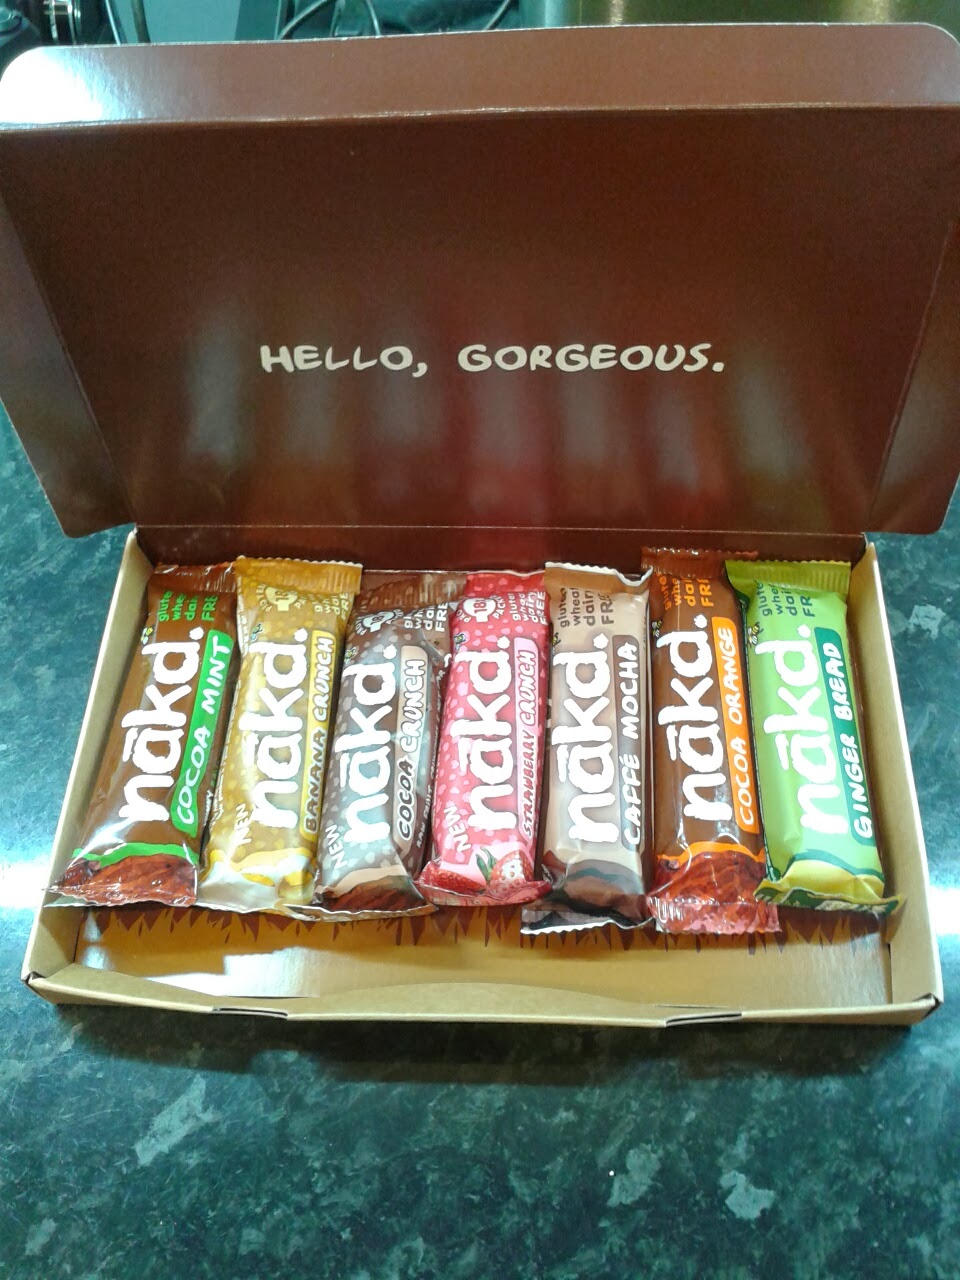 Box of Nakd snack bars